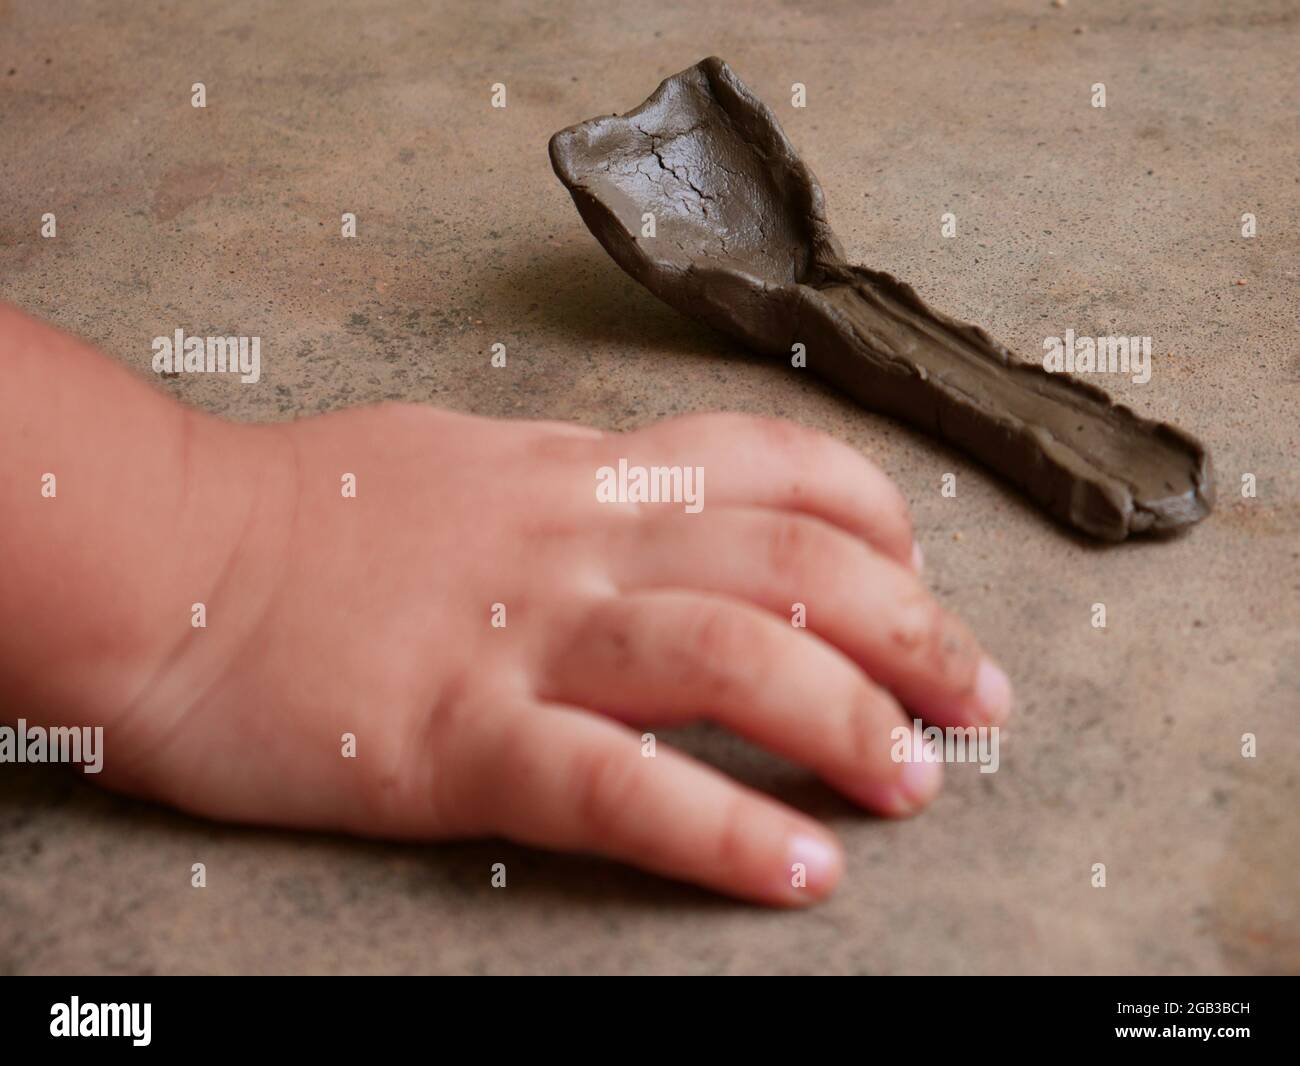 Cuillère faite de terre présentée avec la main d'enfant sur une surface en béton. Banque D'Images